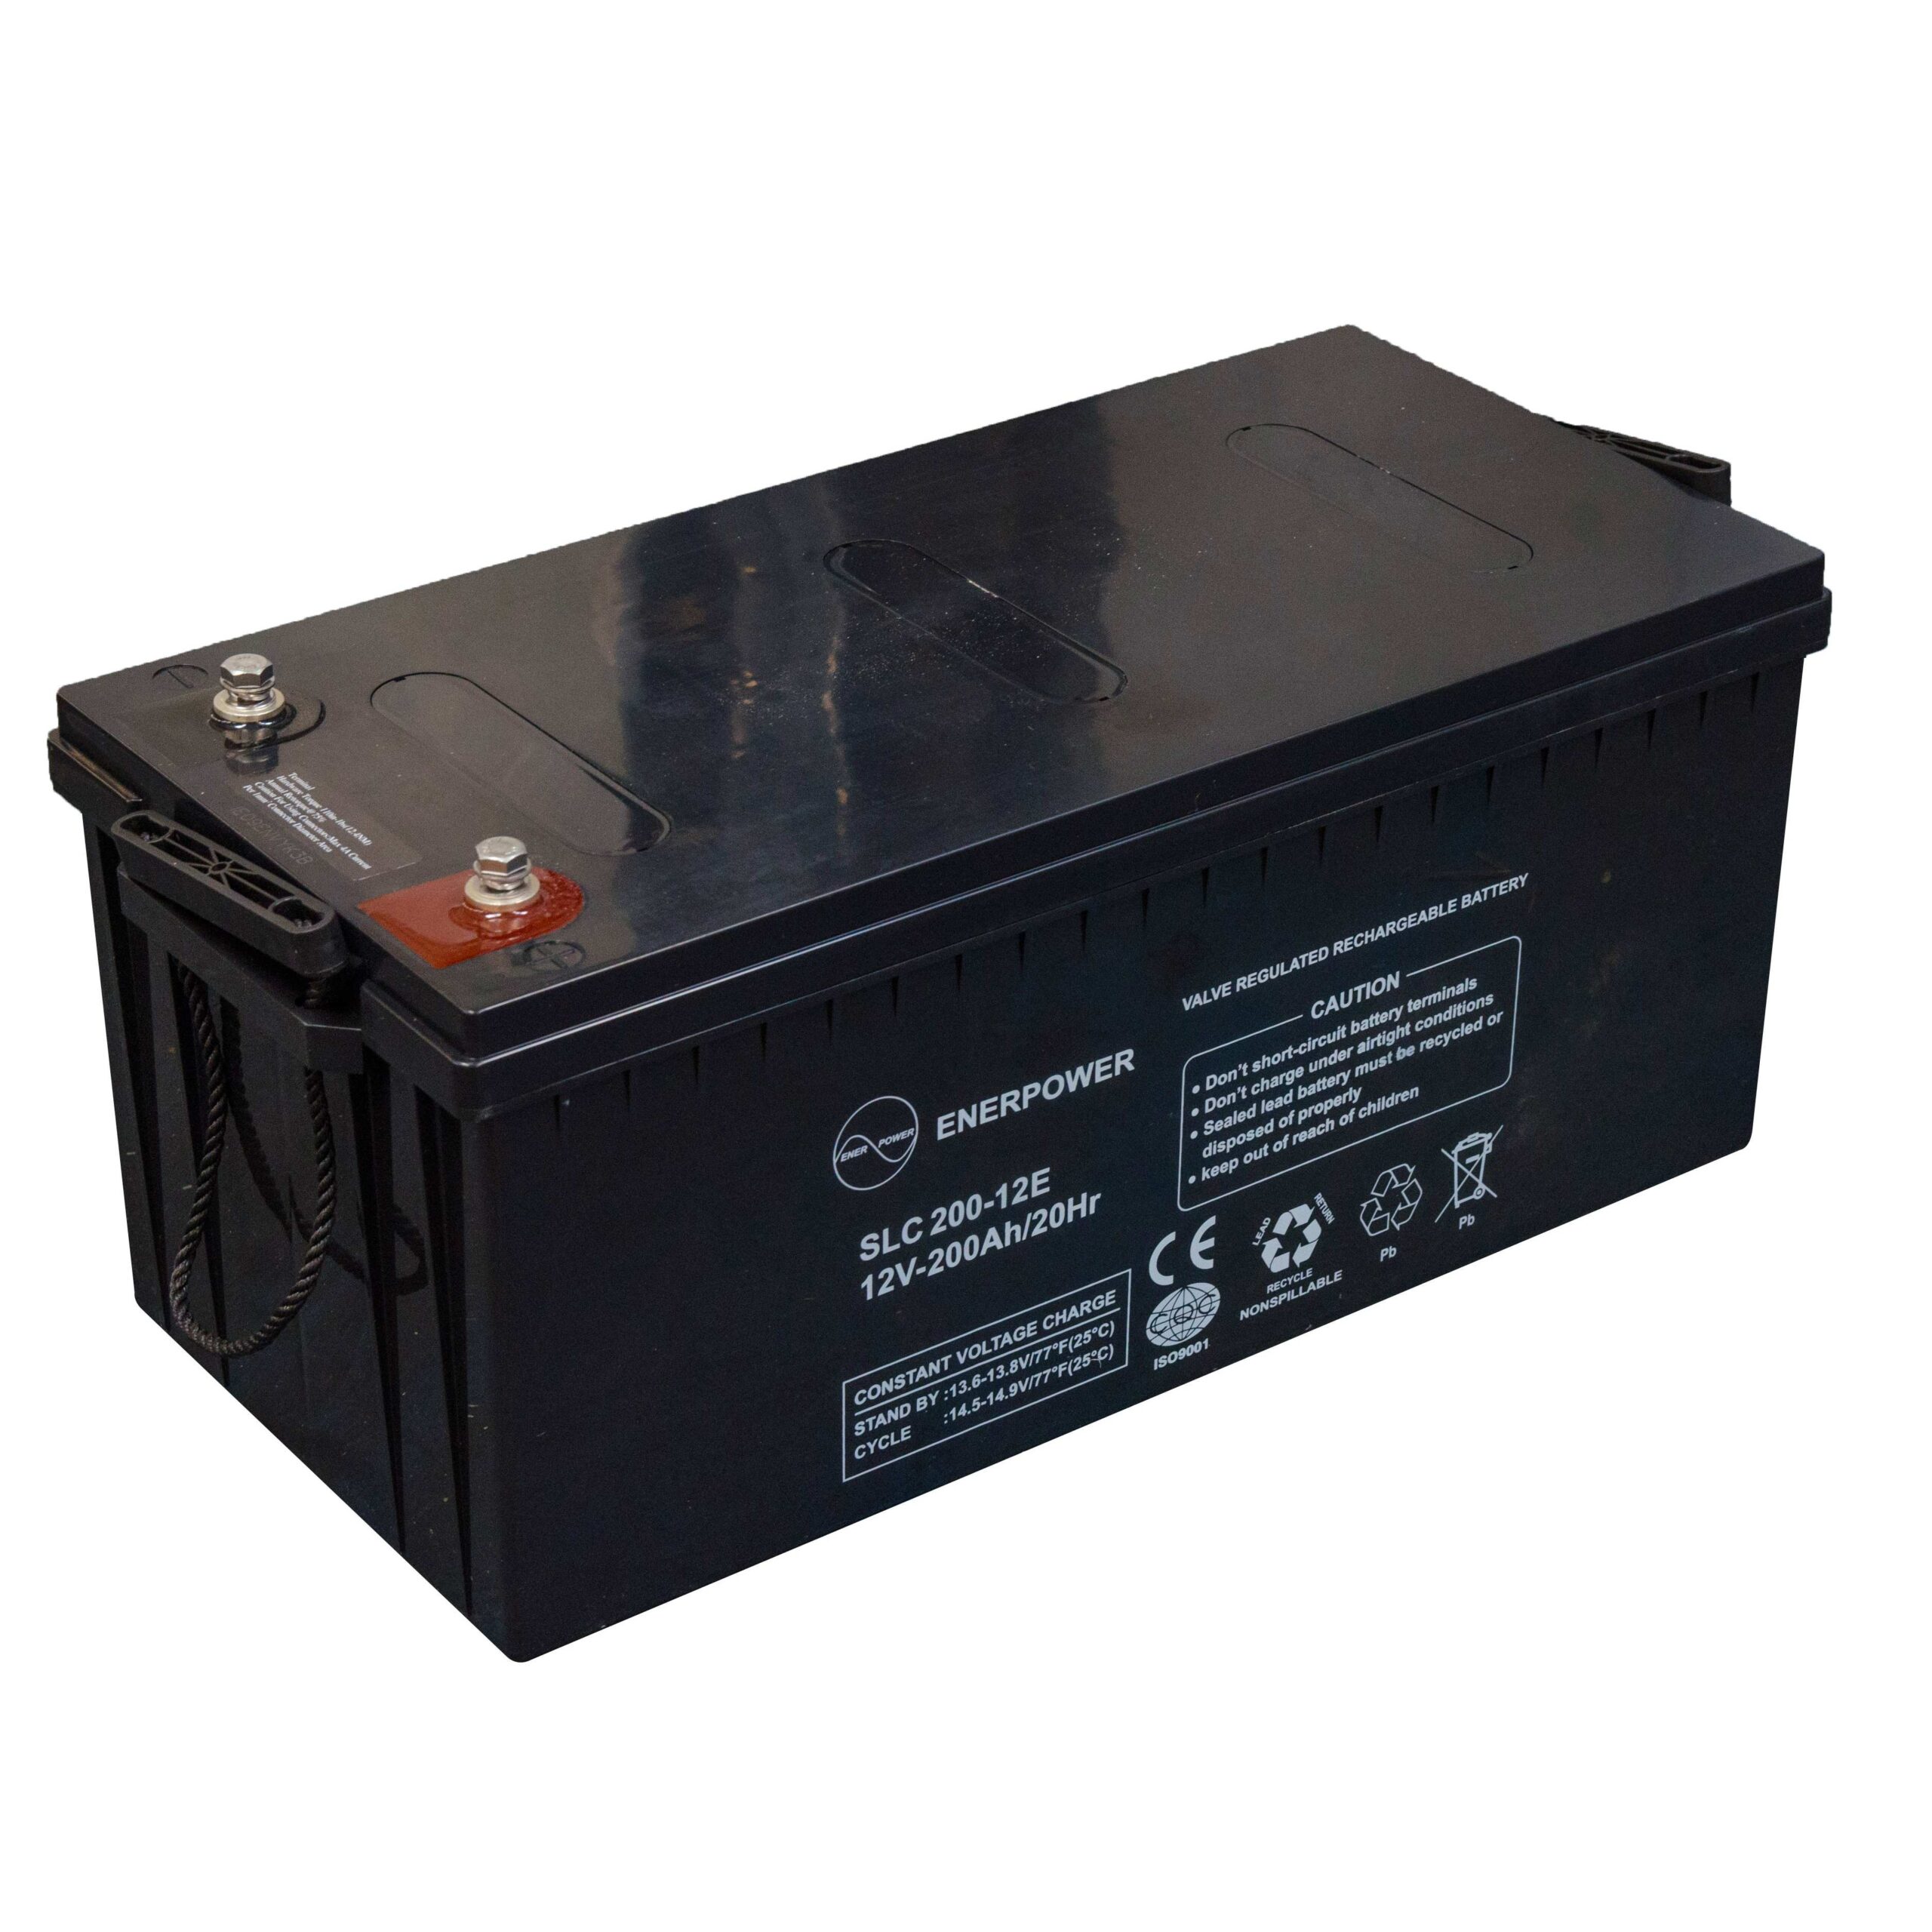 SLC200-12 12V 200Ah AGM ENERPOWER Batterie